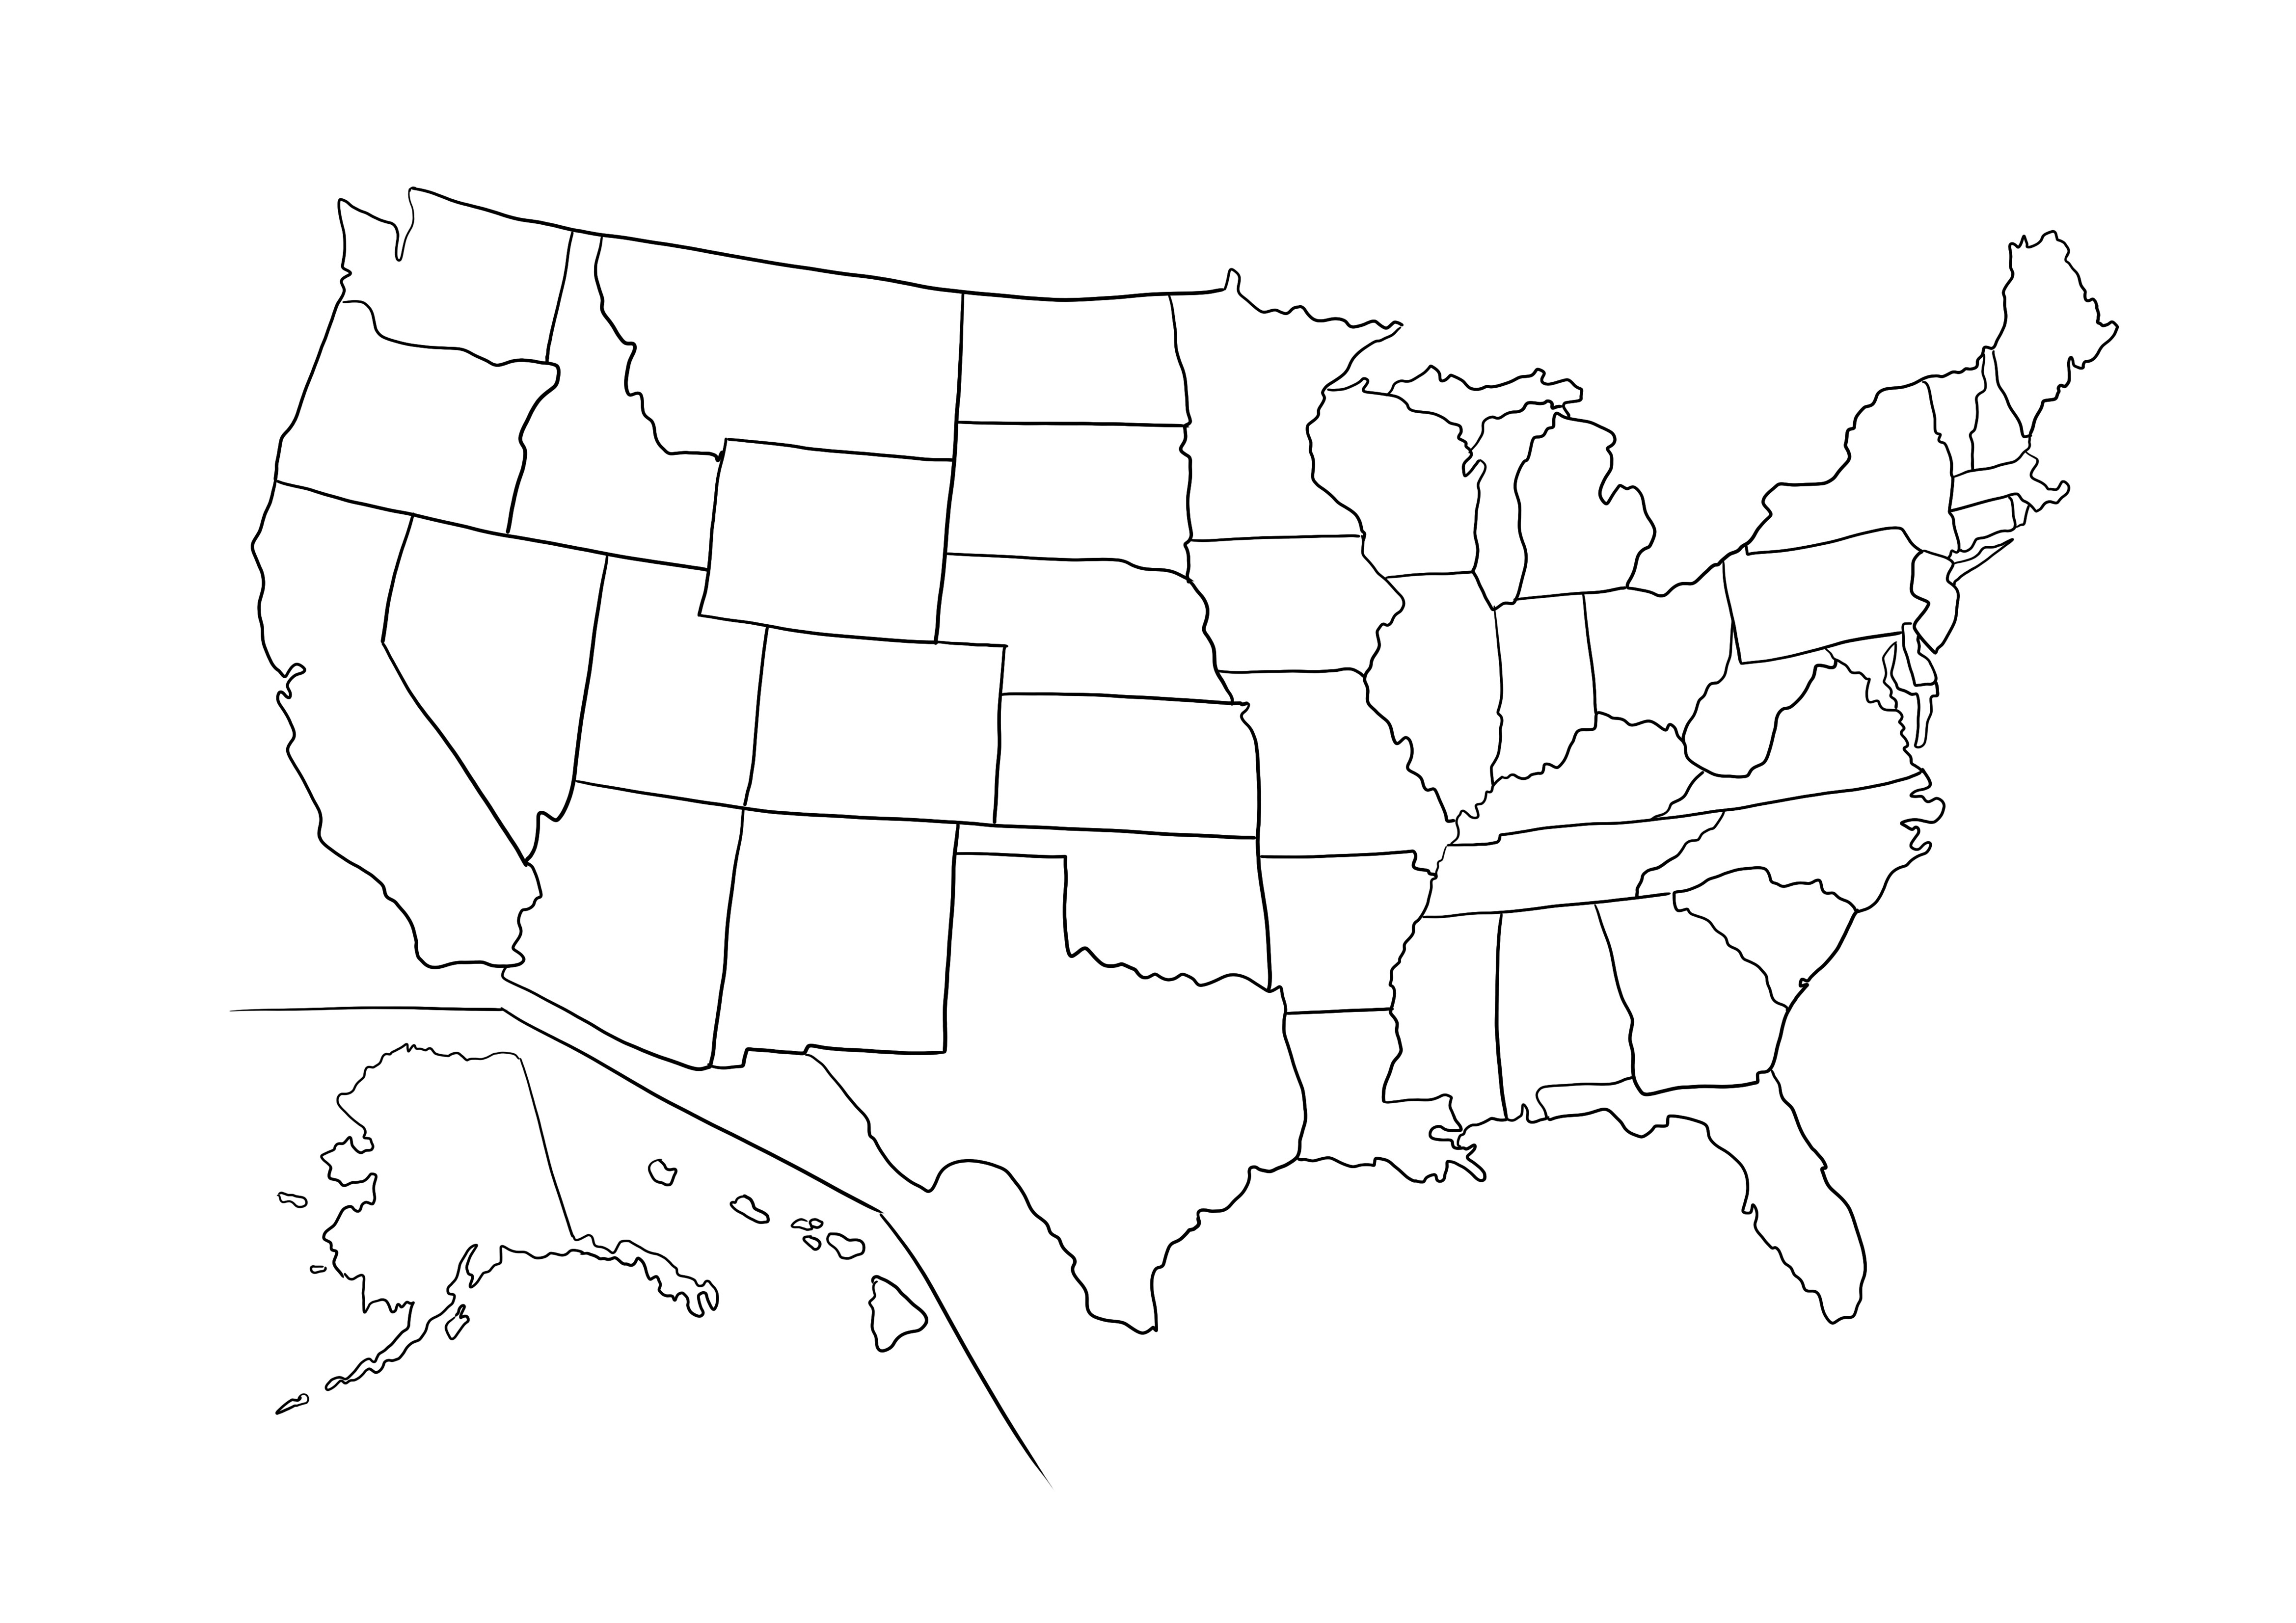 Mappa muta degli Stati Uniti da stampare gratuitamente ea colori